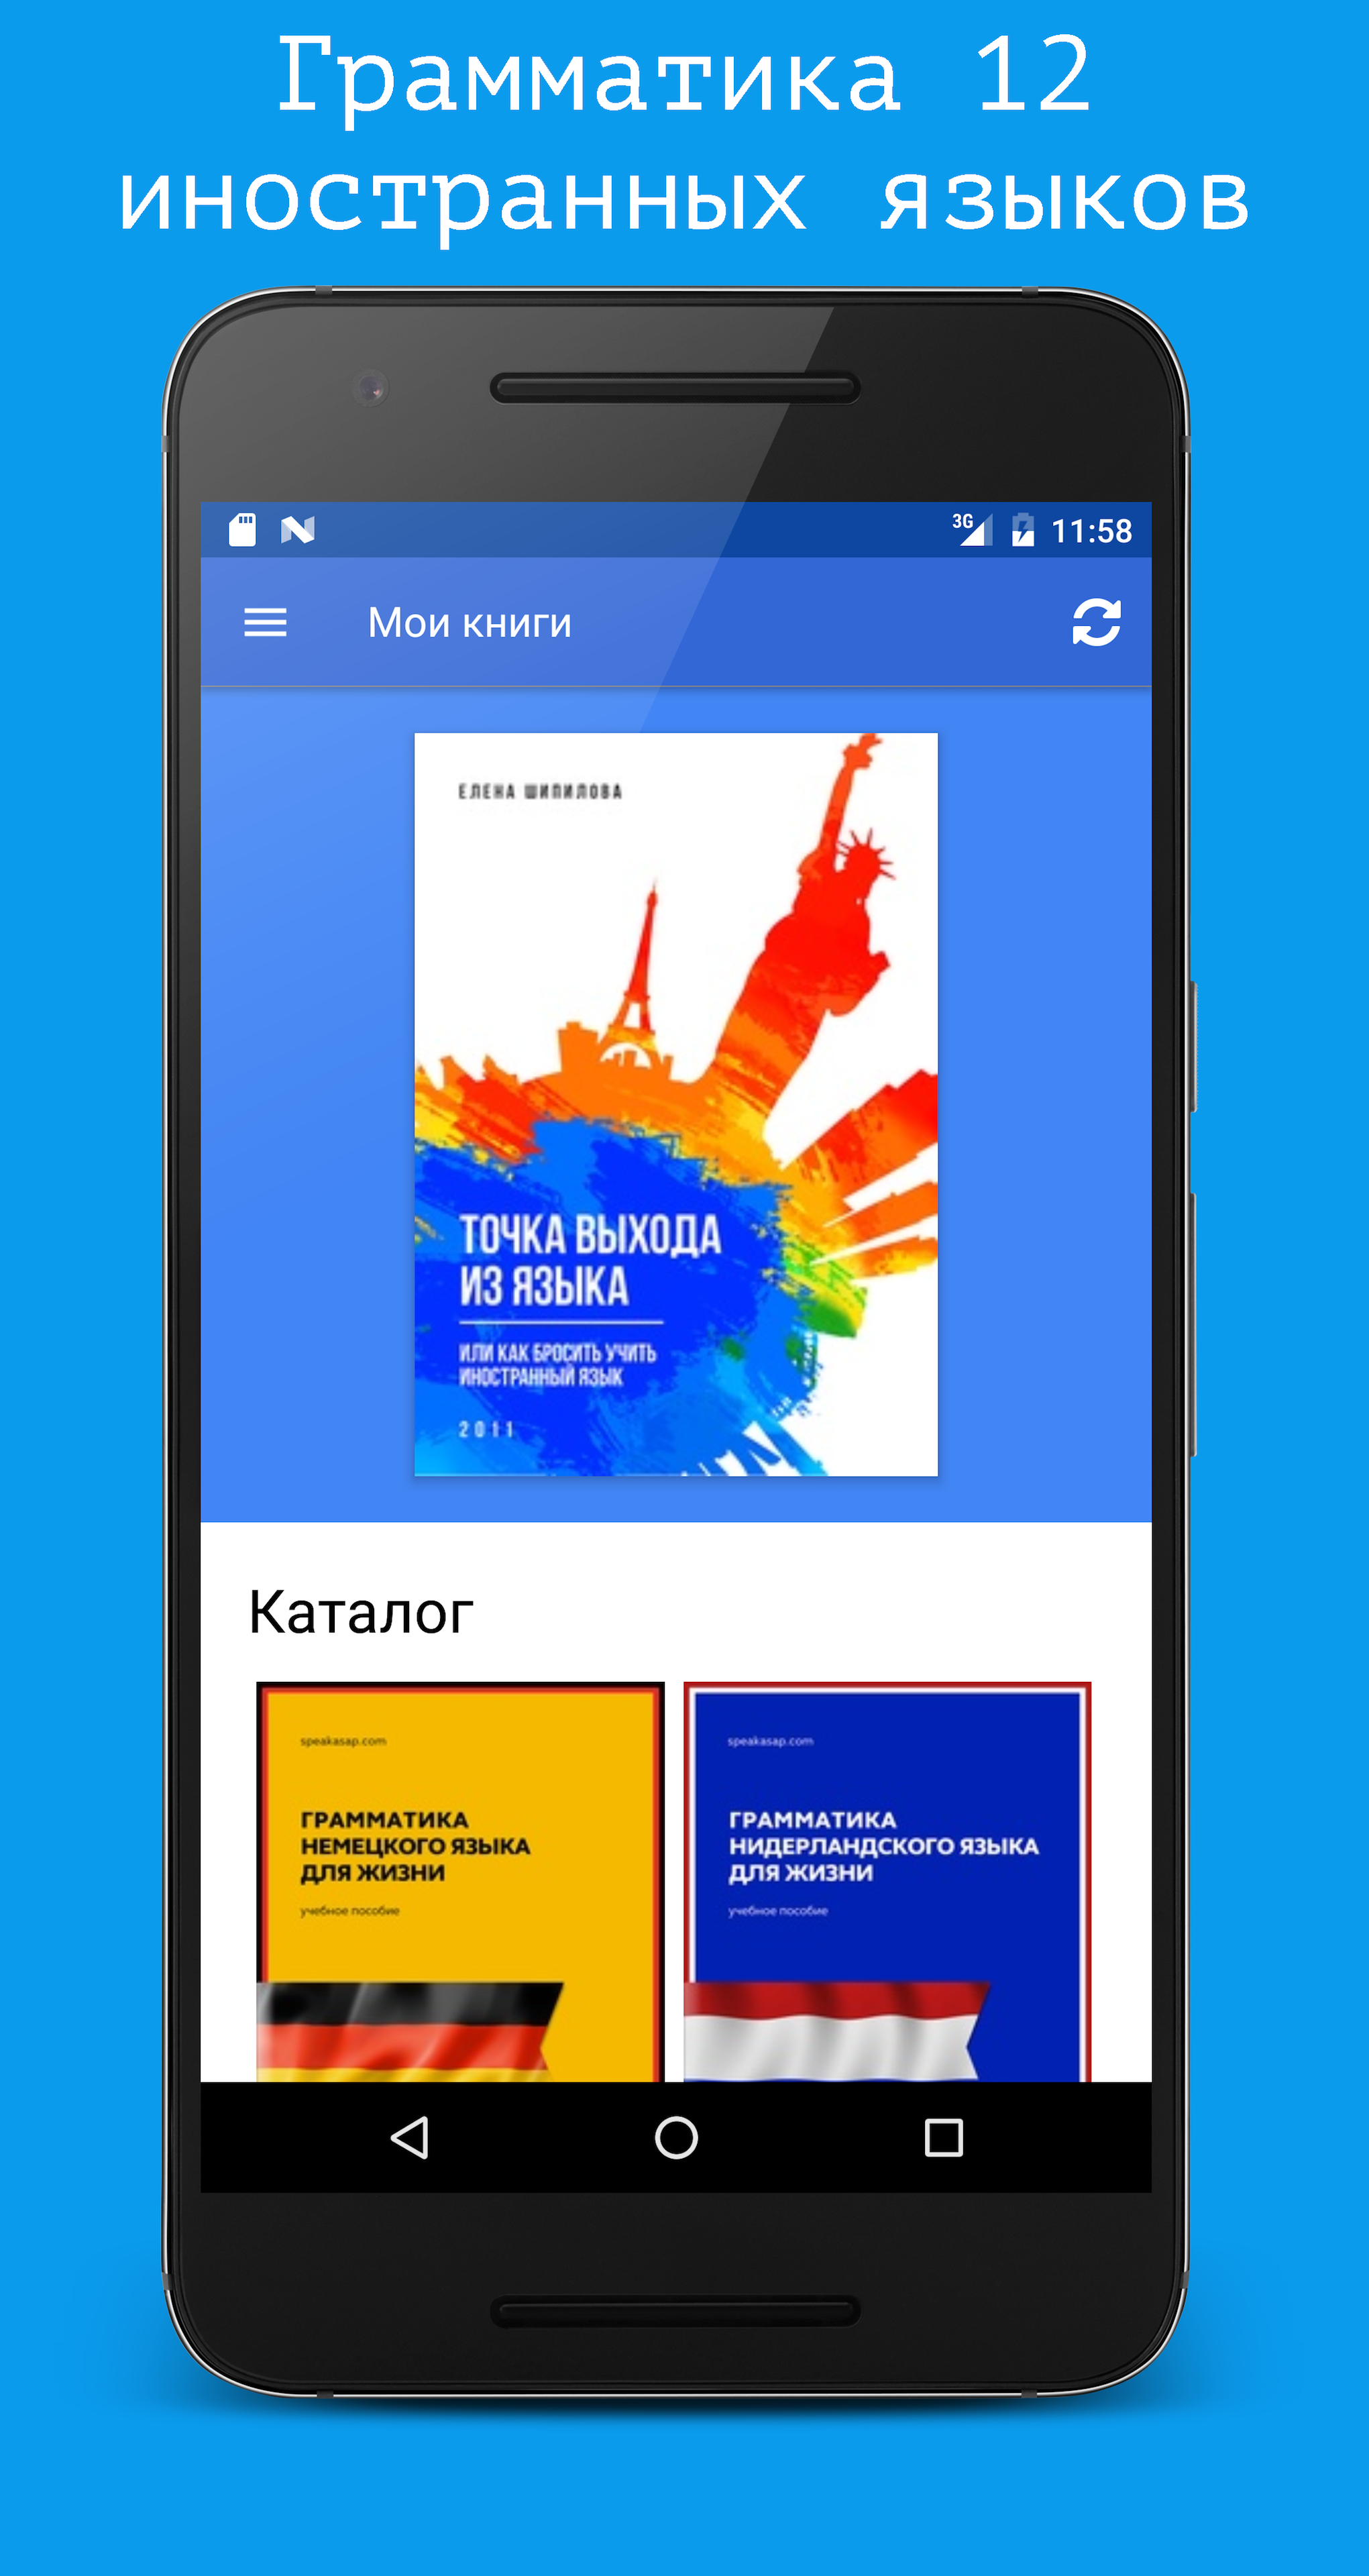 Android application Библиотека иностранных языков. screenshort